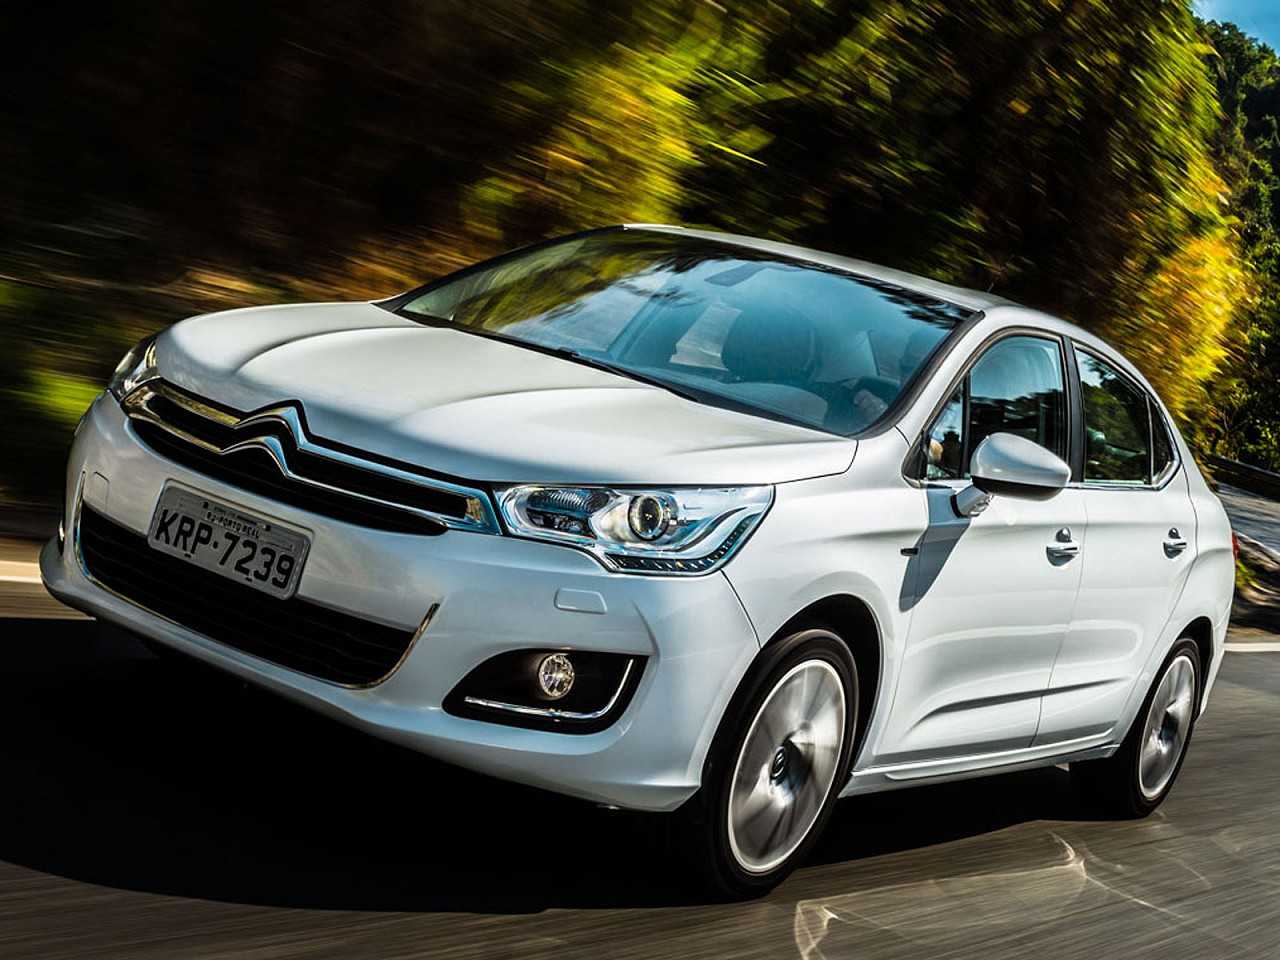 Compra com isenção: Hyundai Creta ou Citroën C4 Lounge?